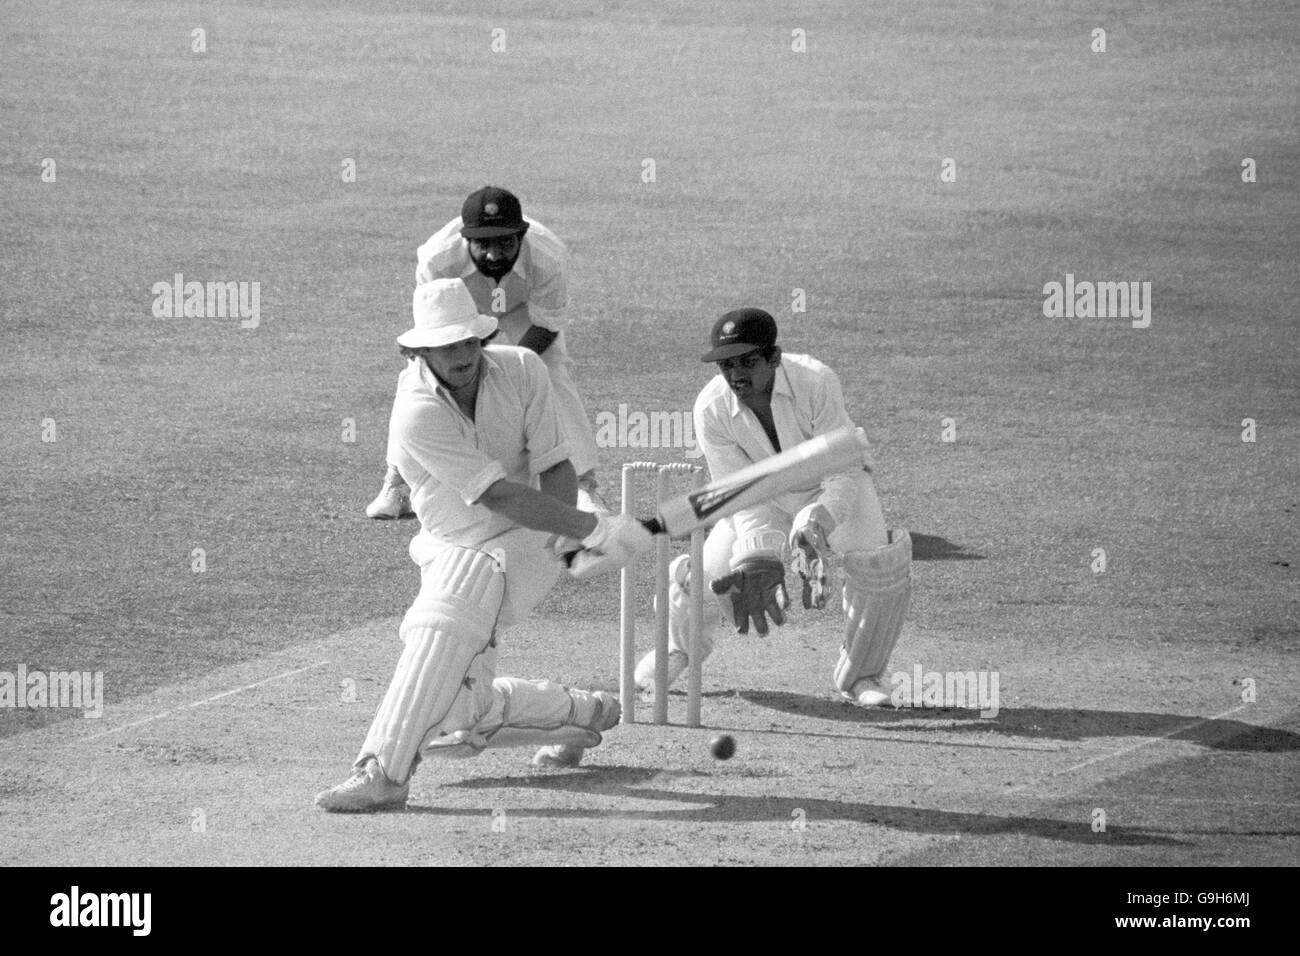 L'inglese Ian Botham (l) passa la palla al confine per completare il doppio test più veloce di 1000 corse e 100 wickets, dopo aver fatto solo 21 test per raggiungere l'impresa. Guardando sopra è India wicketkeeper Bharat Reddy (r) Foto Stock